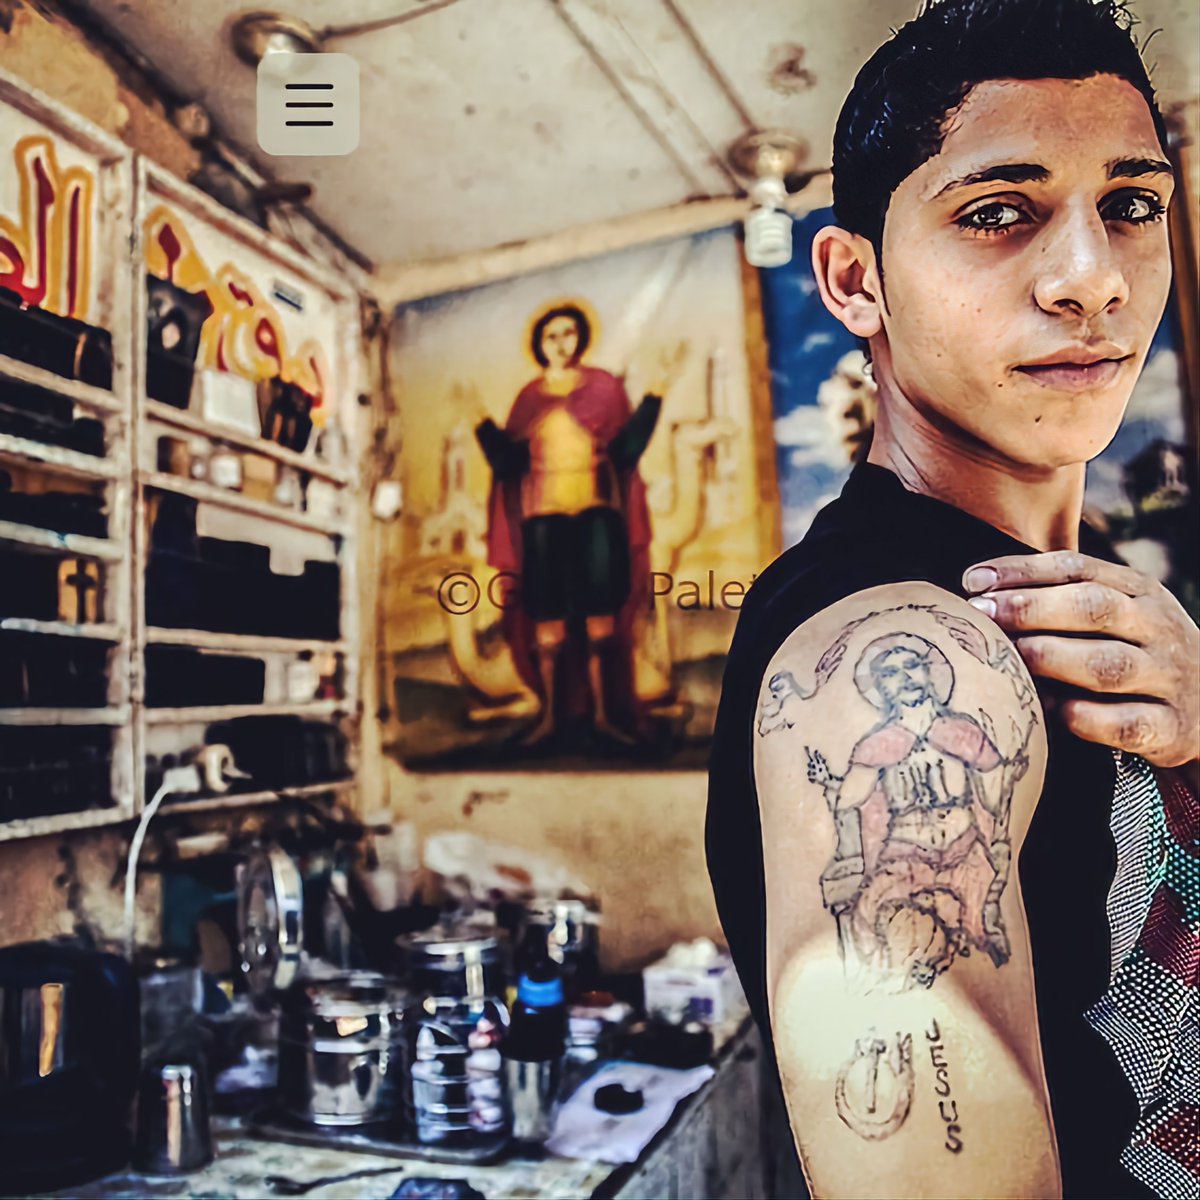 Chico Copto con un tatuaje cristiano en el Cairo, donde son perseguidos a causa de su fe en Cristo  #WeareN 
#CristianosPerseguidos